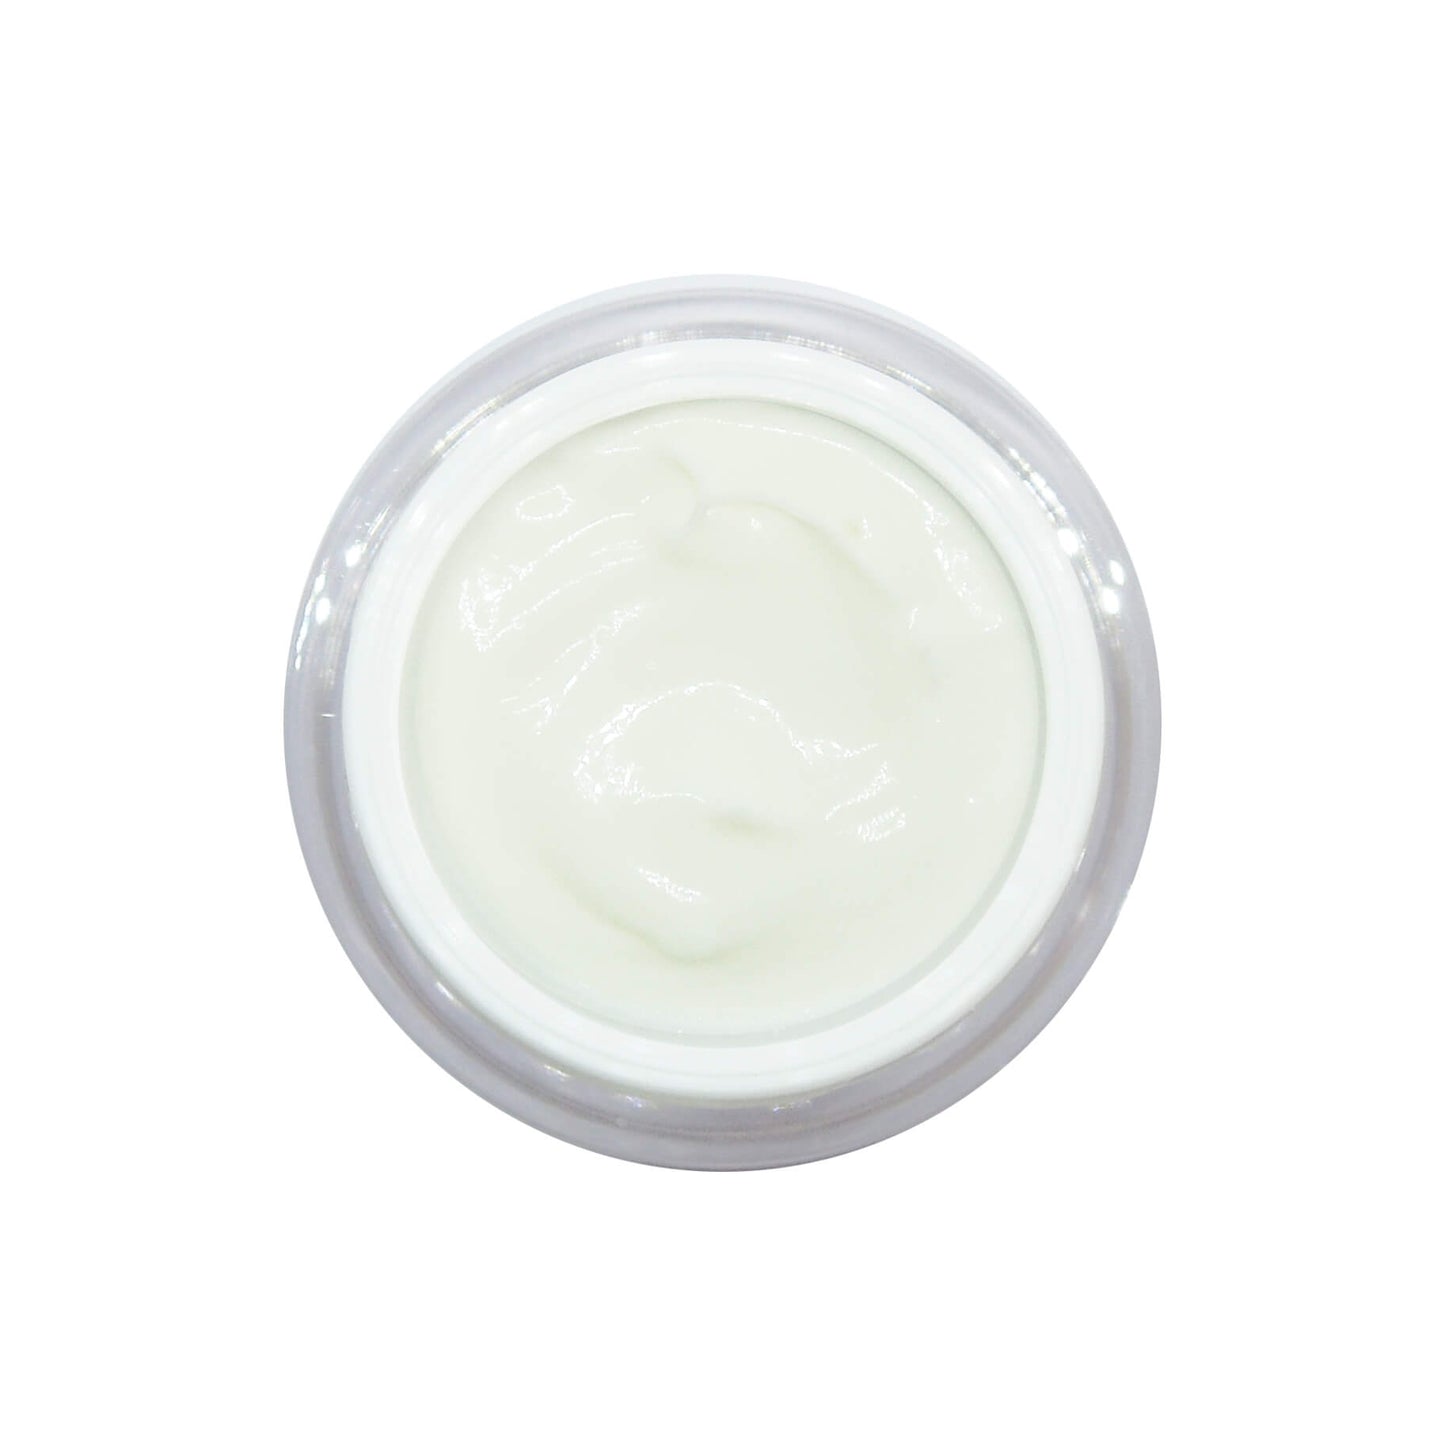  Immagine dall'alto del vaso aperto e della crema all'interno di Rebalancing Fresh Cream 50 ml - 1.7 fl.oz.